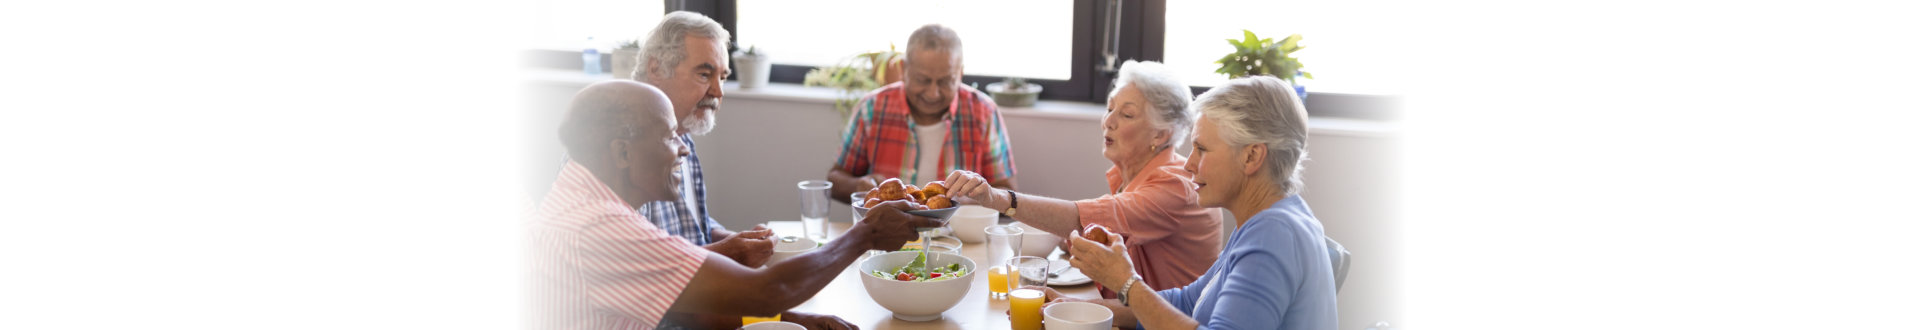 group of elderly people eating healthy foods